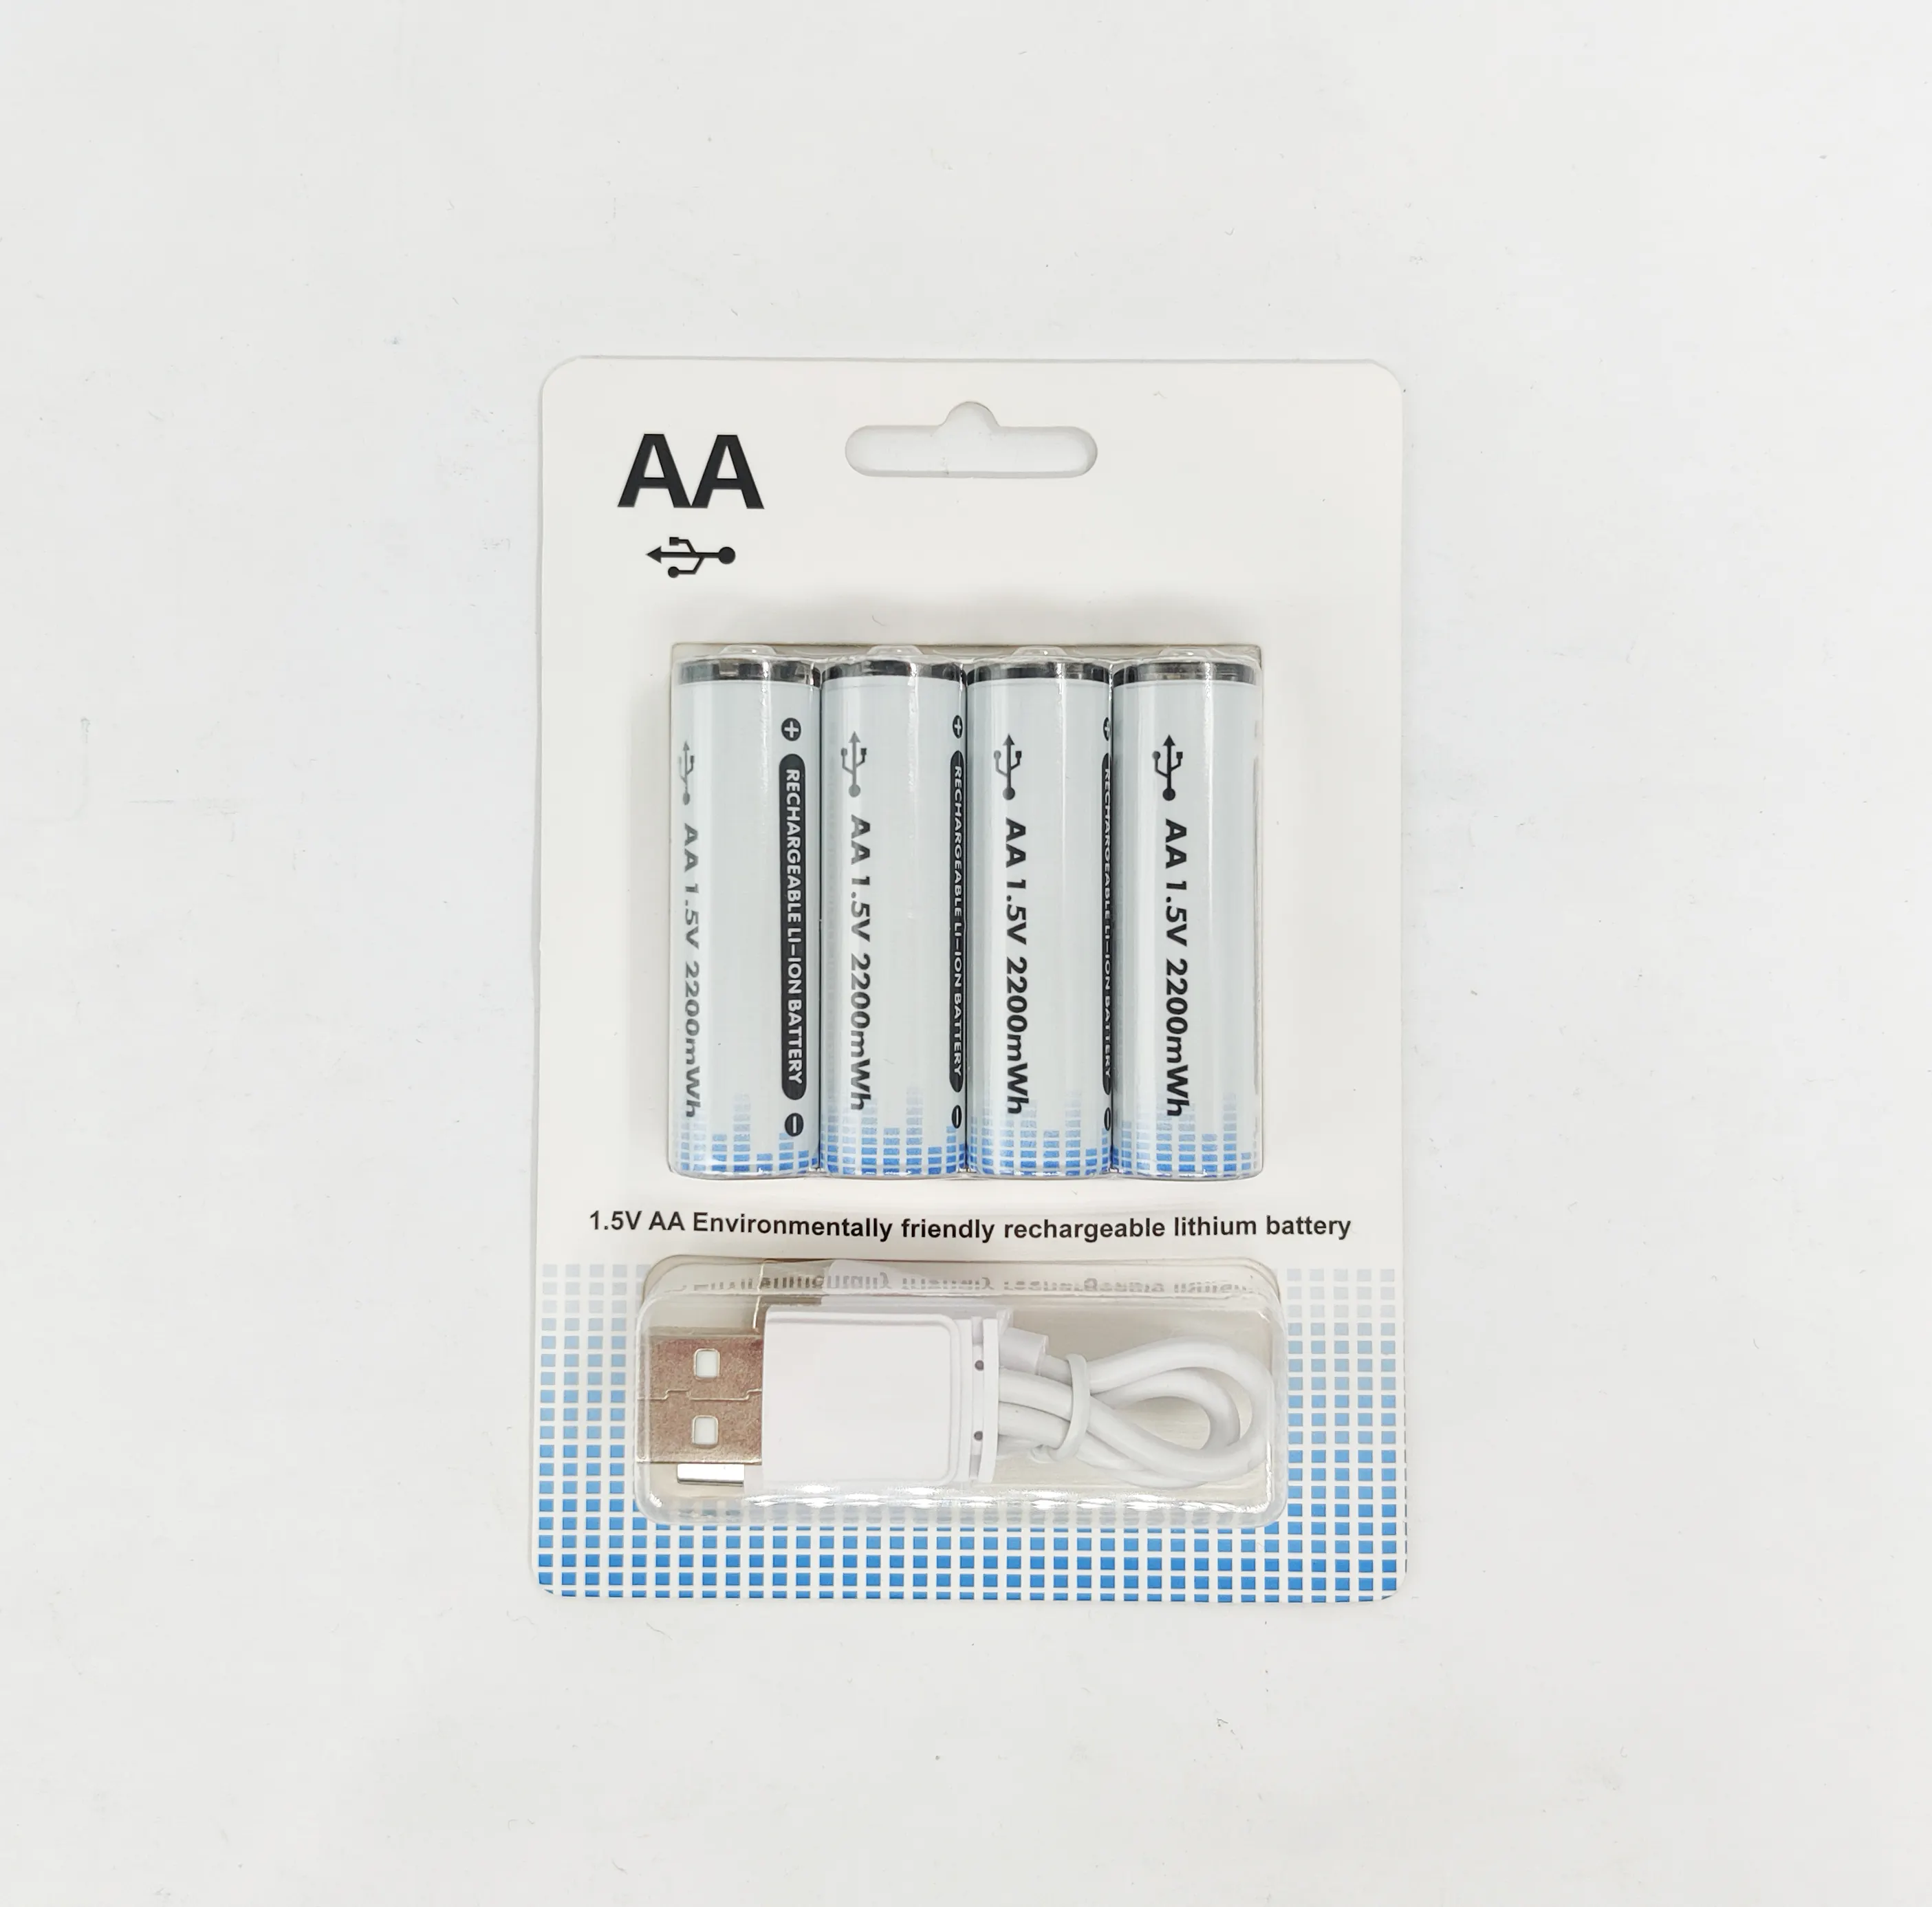 Yüksek kalite yerine aaa aa alkalin kuru piller c tipi mikro USB şarj 1.5v li-ion şarj edilebilir aa pil